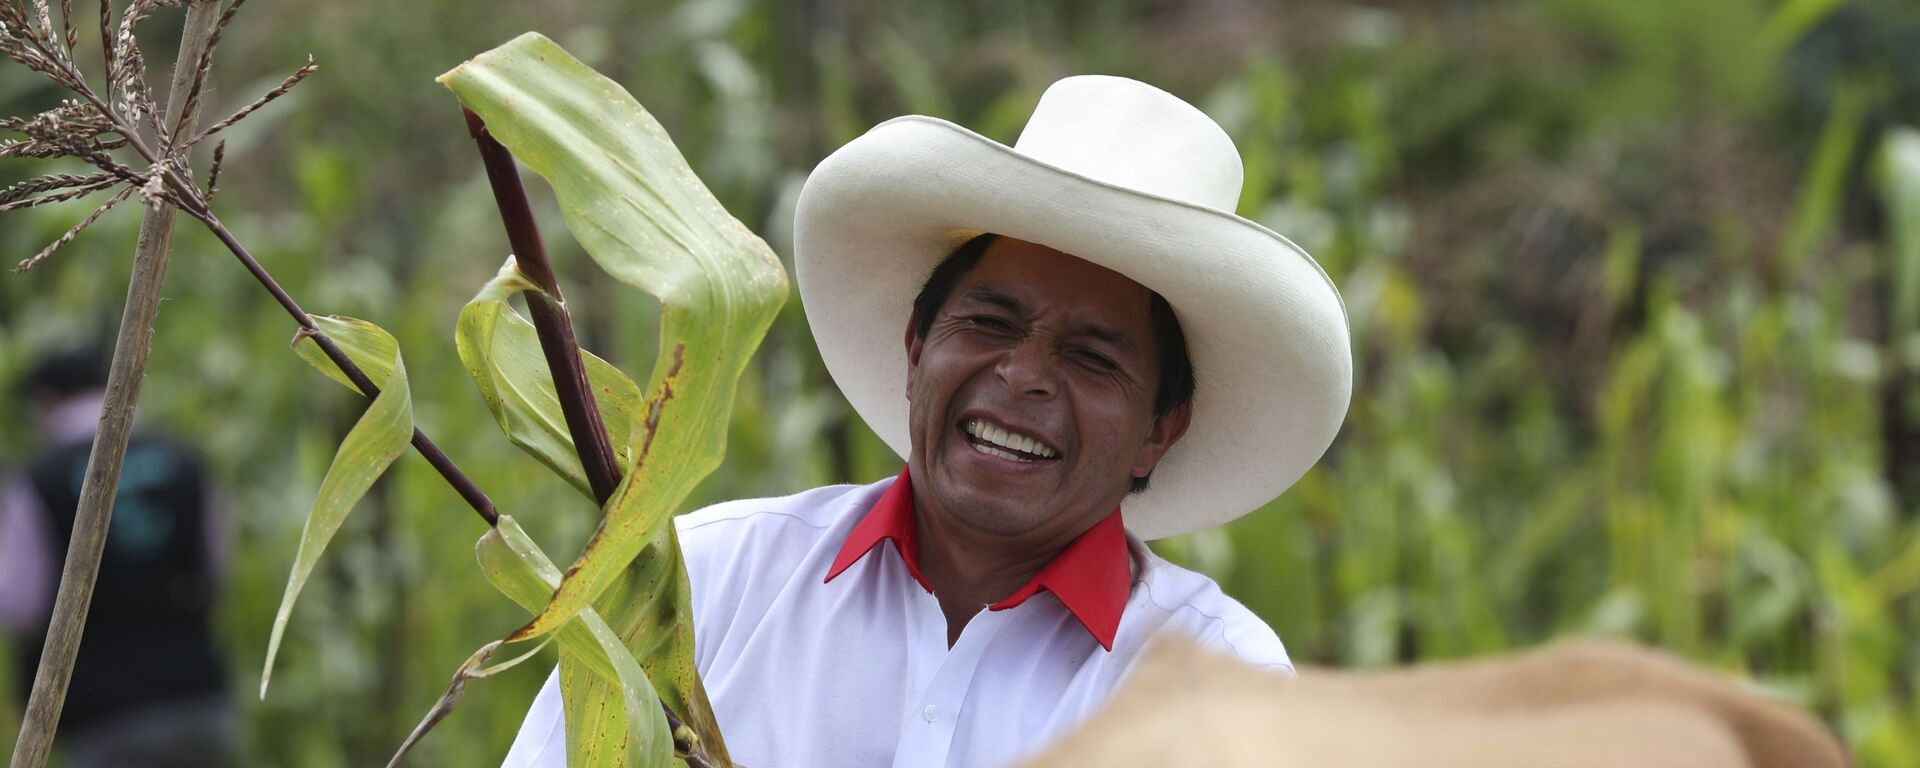 Pedro Castillo, então candidato à presidência do Peru, segura um talo de milho em sua propriedade em Chugur, no Peru, em 15 de abril de 2021 - Sputnik Brasil, 1920, 25.11.2021